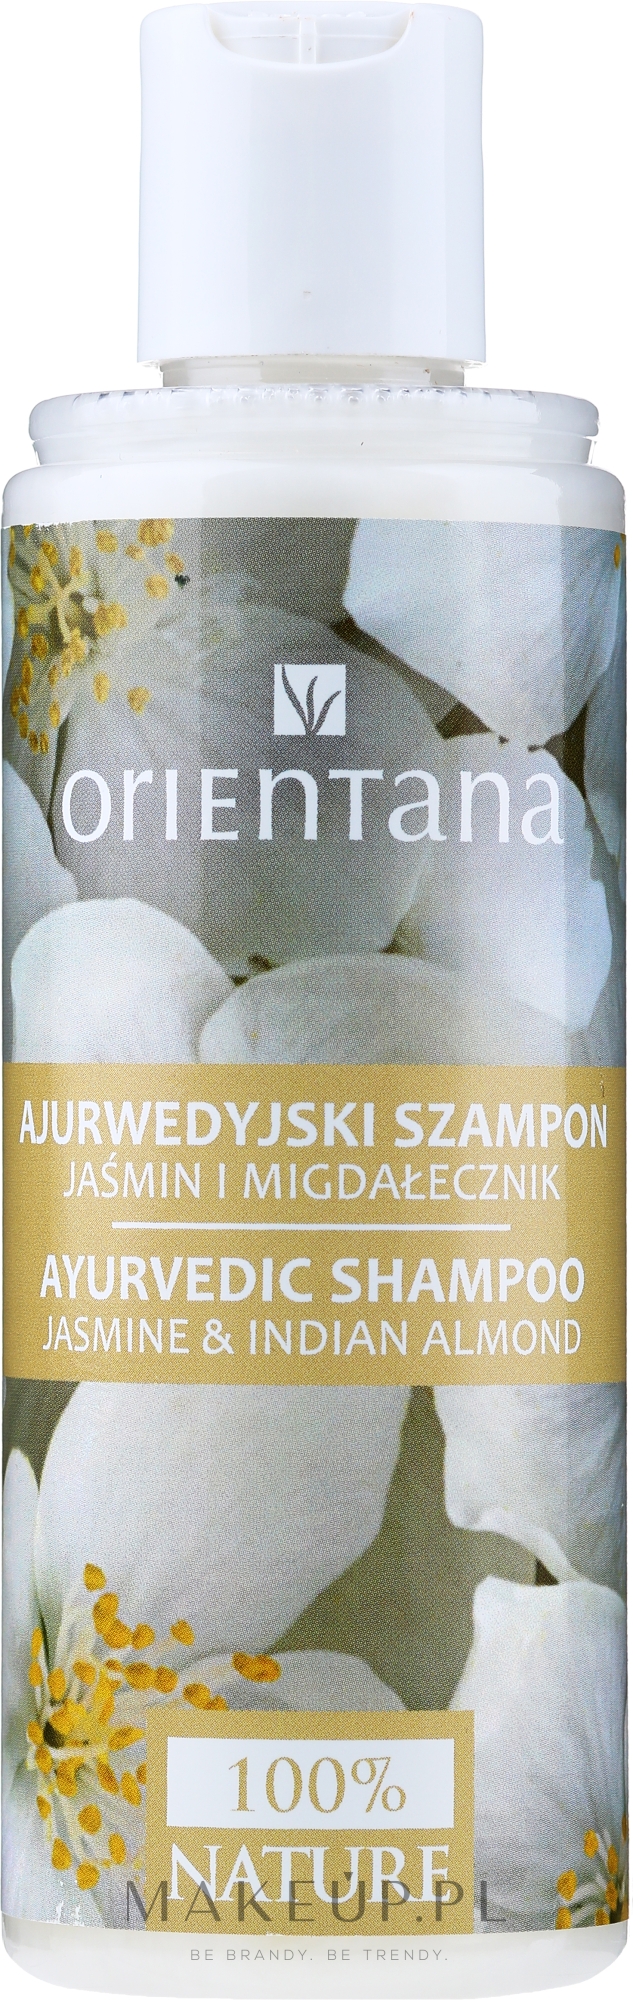 orientana ajurwedyjski szampon do włosów jaśmin i migdałecznik